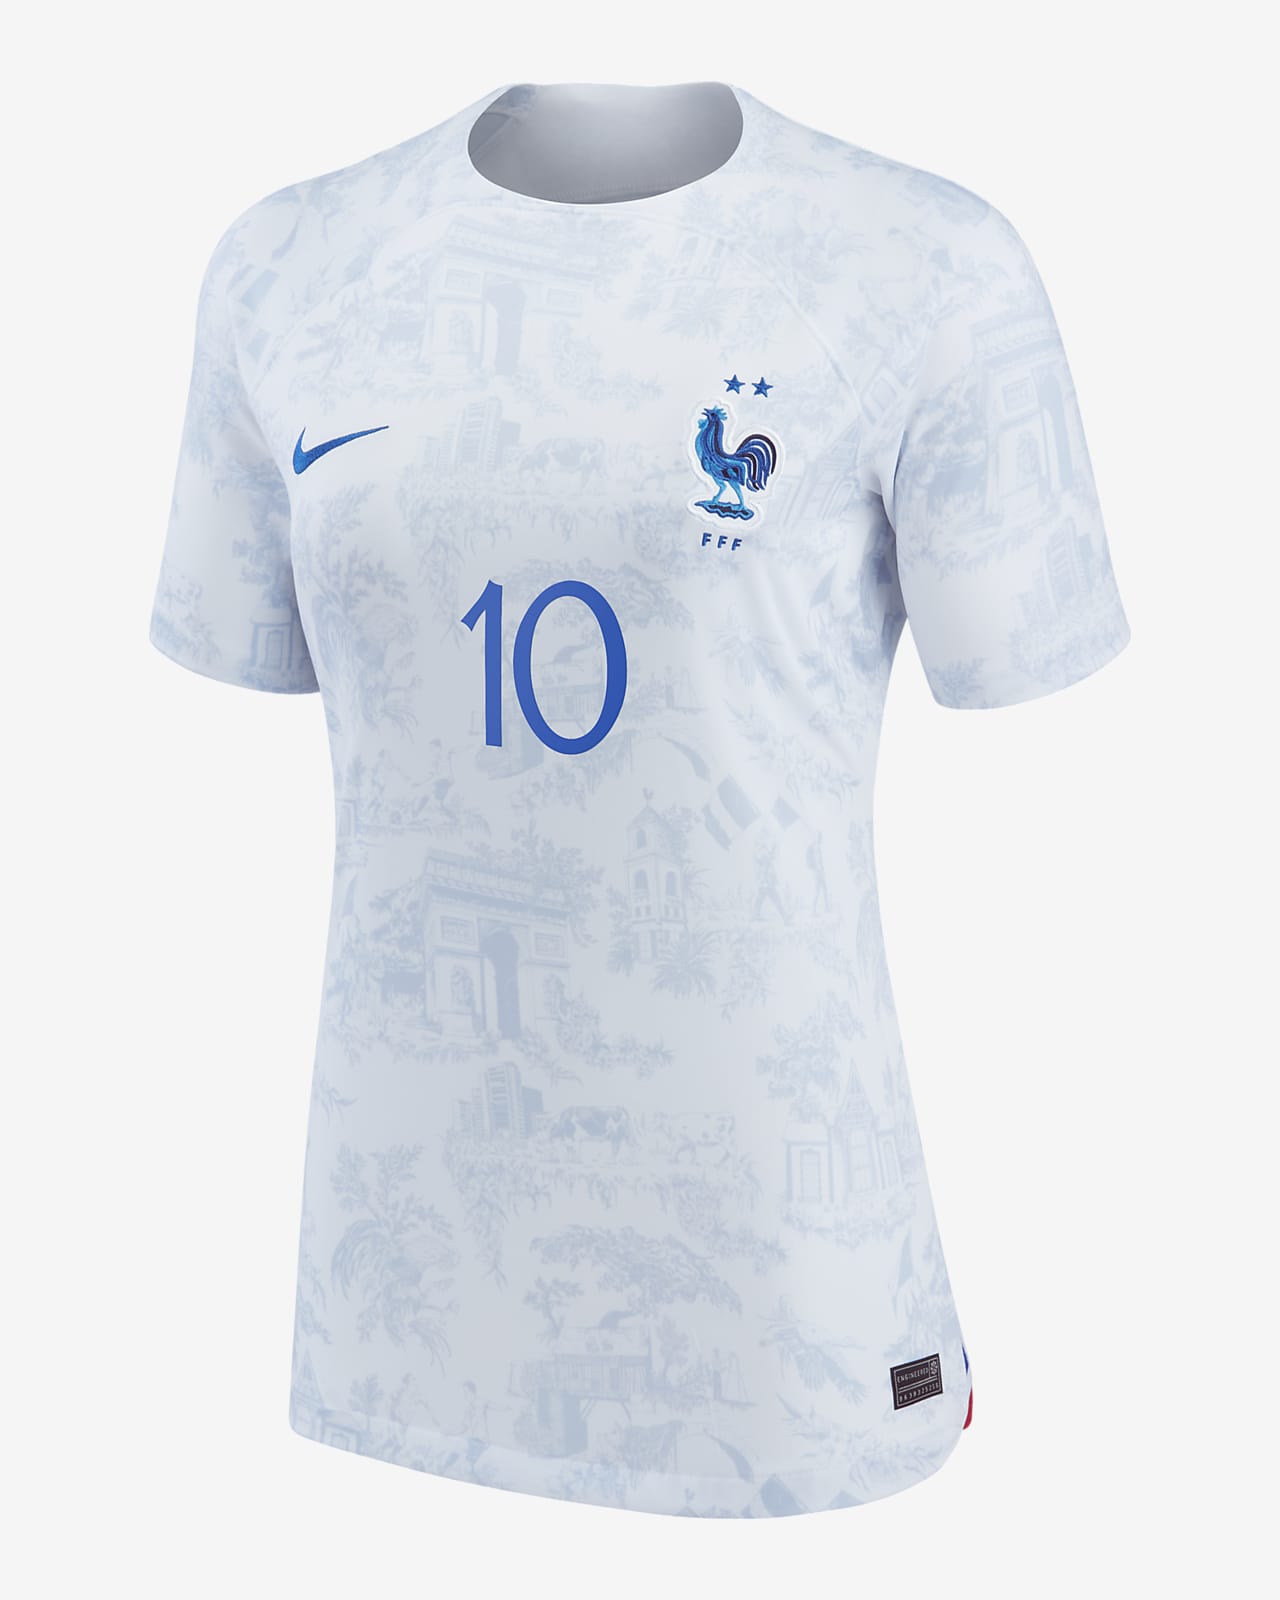 Jersey de fútbol Nike Dri-FIT de la selección nacional de Francia visitante 2022/23 Stadium (Kylian Mbappe) para mujer.